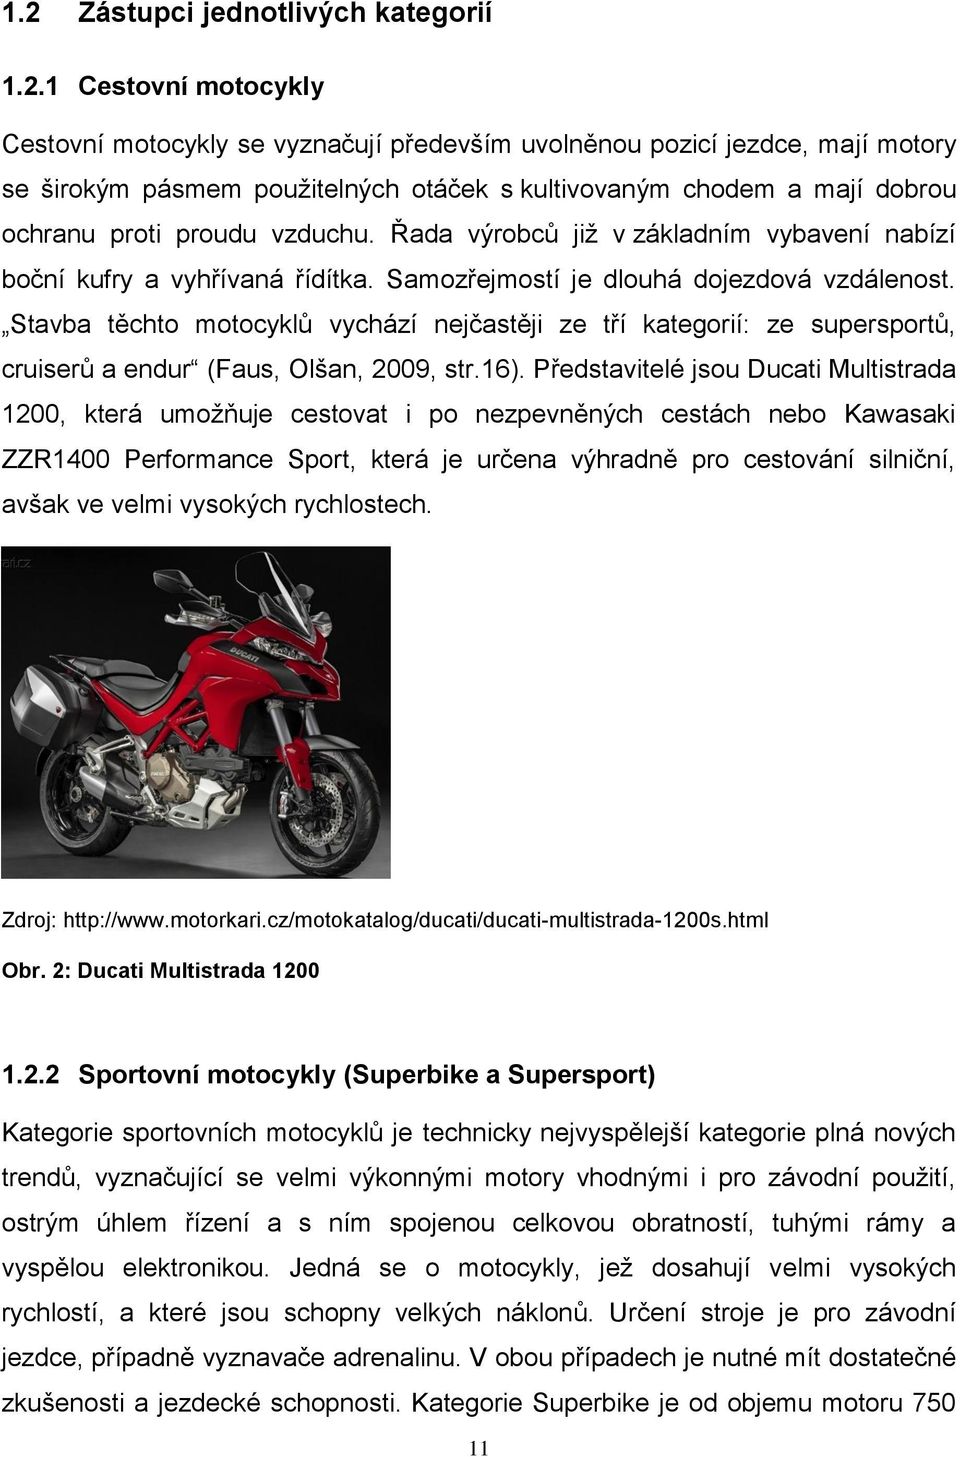 Stavba těchto motocyklů vychází nejčastěji ze tří kategorií: ze supersportů, cruiserů a endur (Faus, Olšan, 2009, str.16).